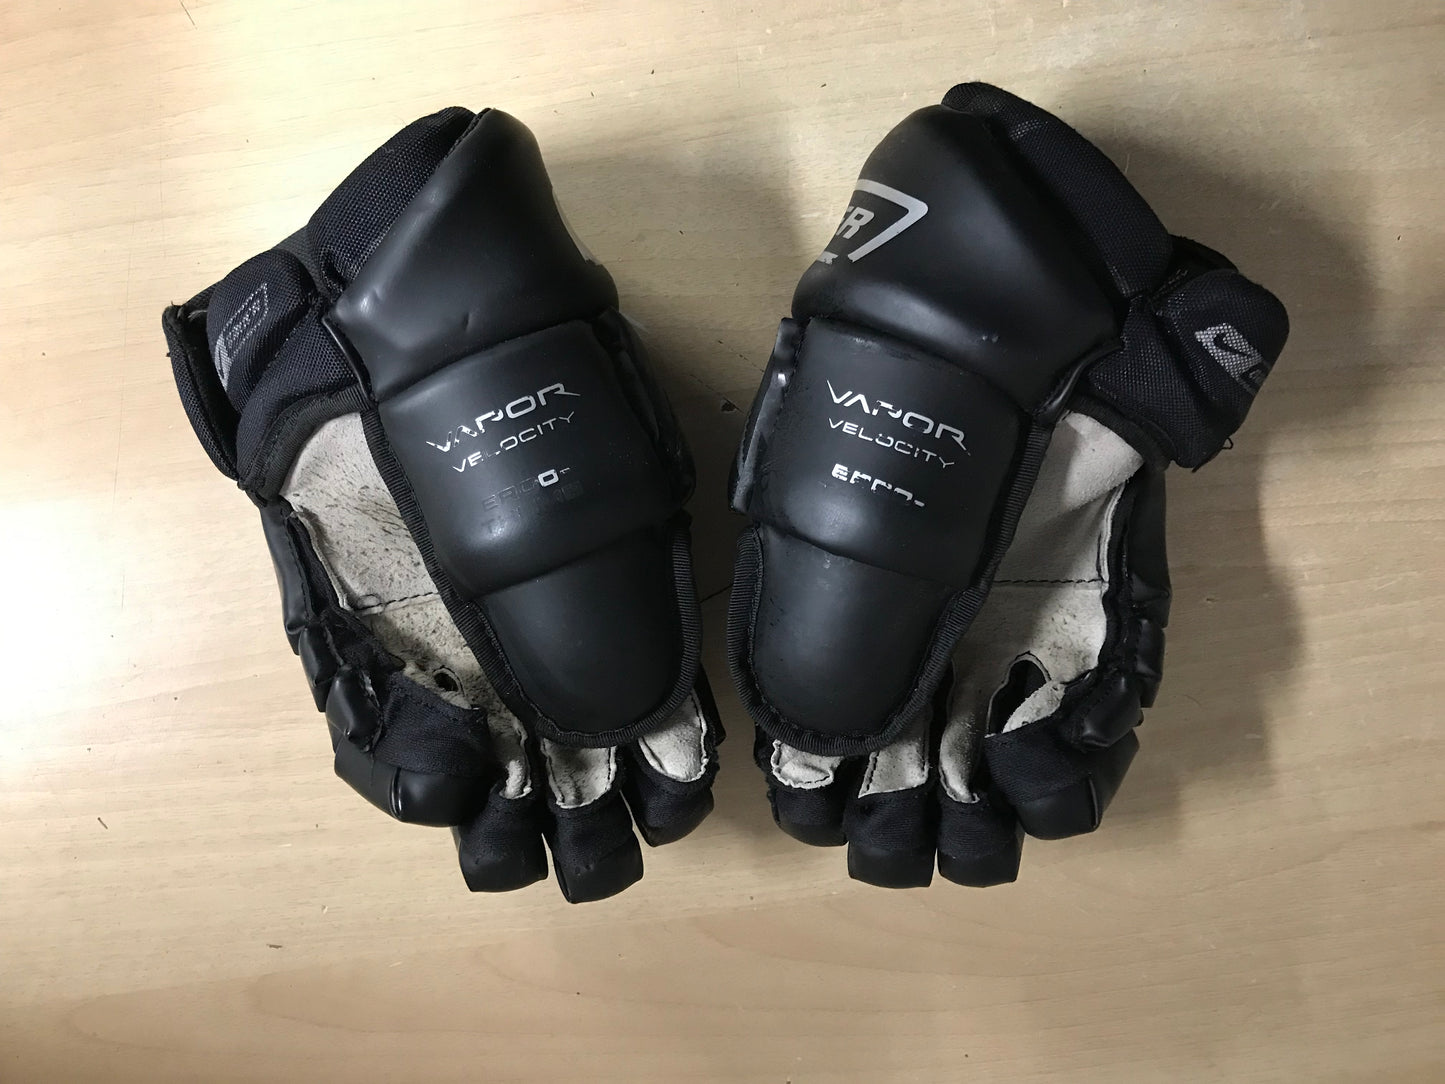 Hockey Gloves Child Size 12 inch Junior Bauer Nike Excellent